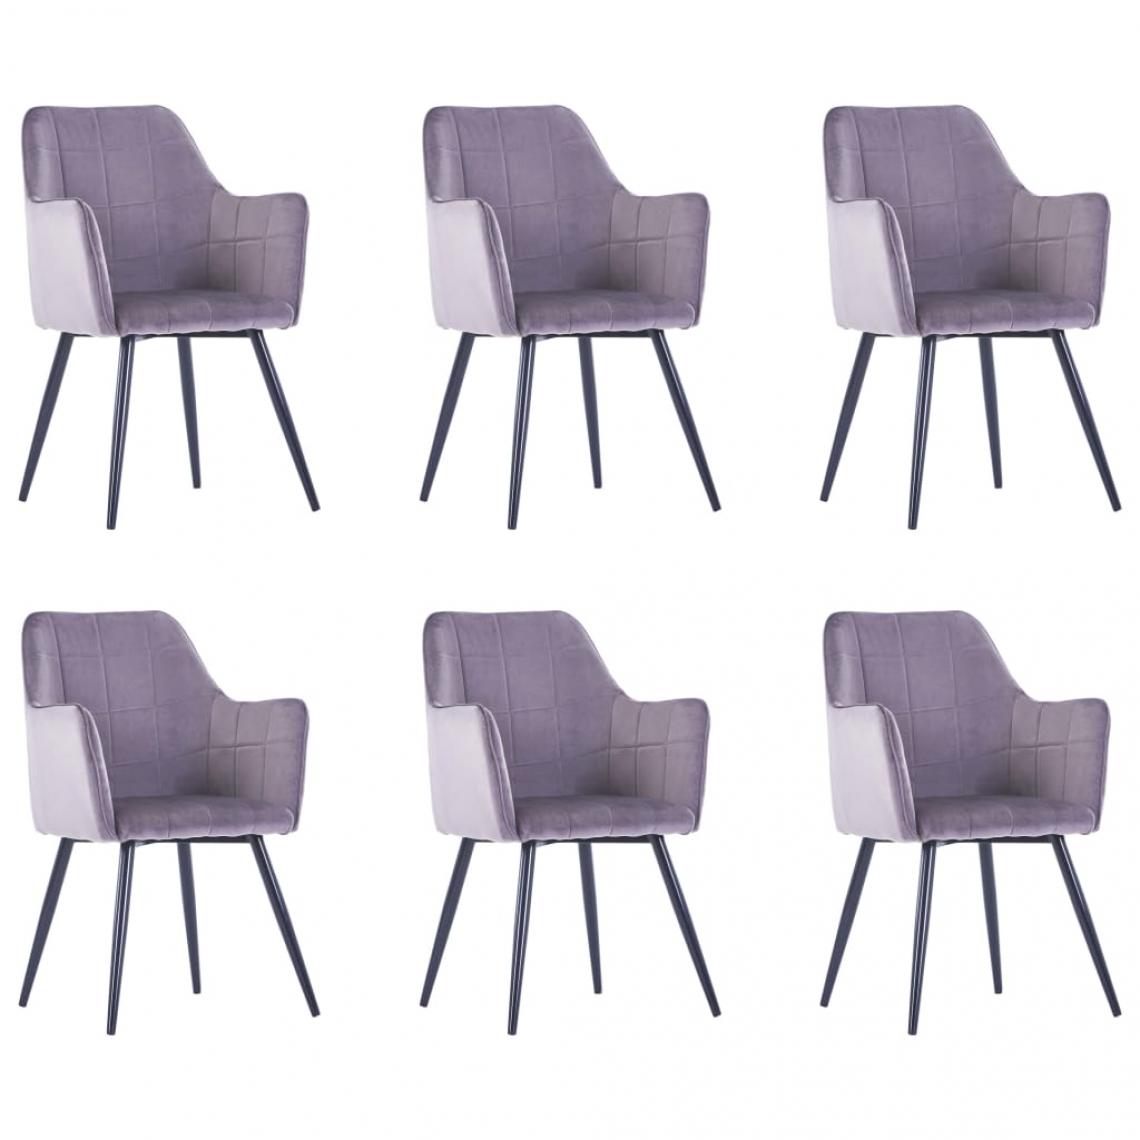 Decoshop26 - Lot de 6 chaises de salle à manger cuisine design moderne velours gris CDS022508 - Chaises